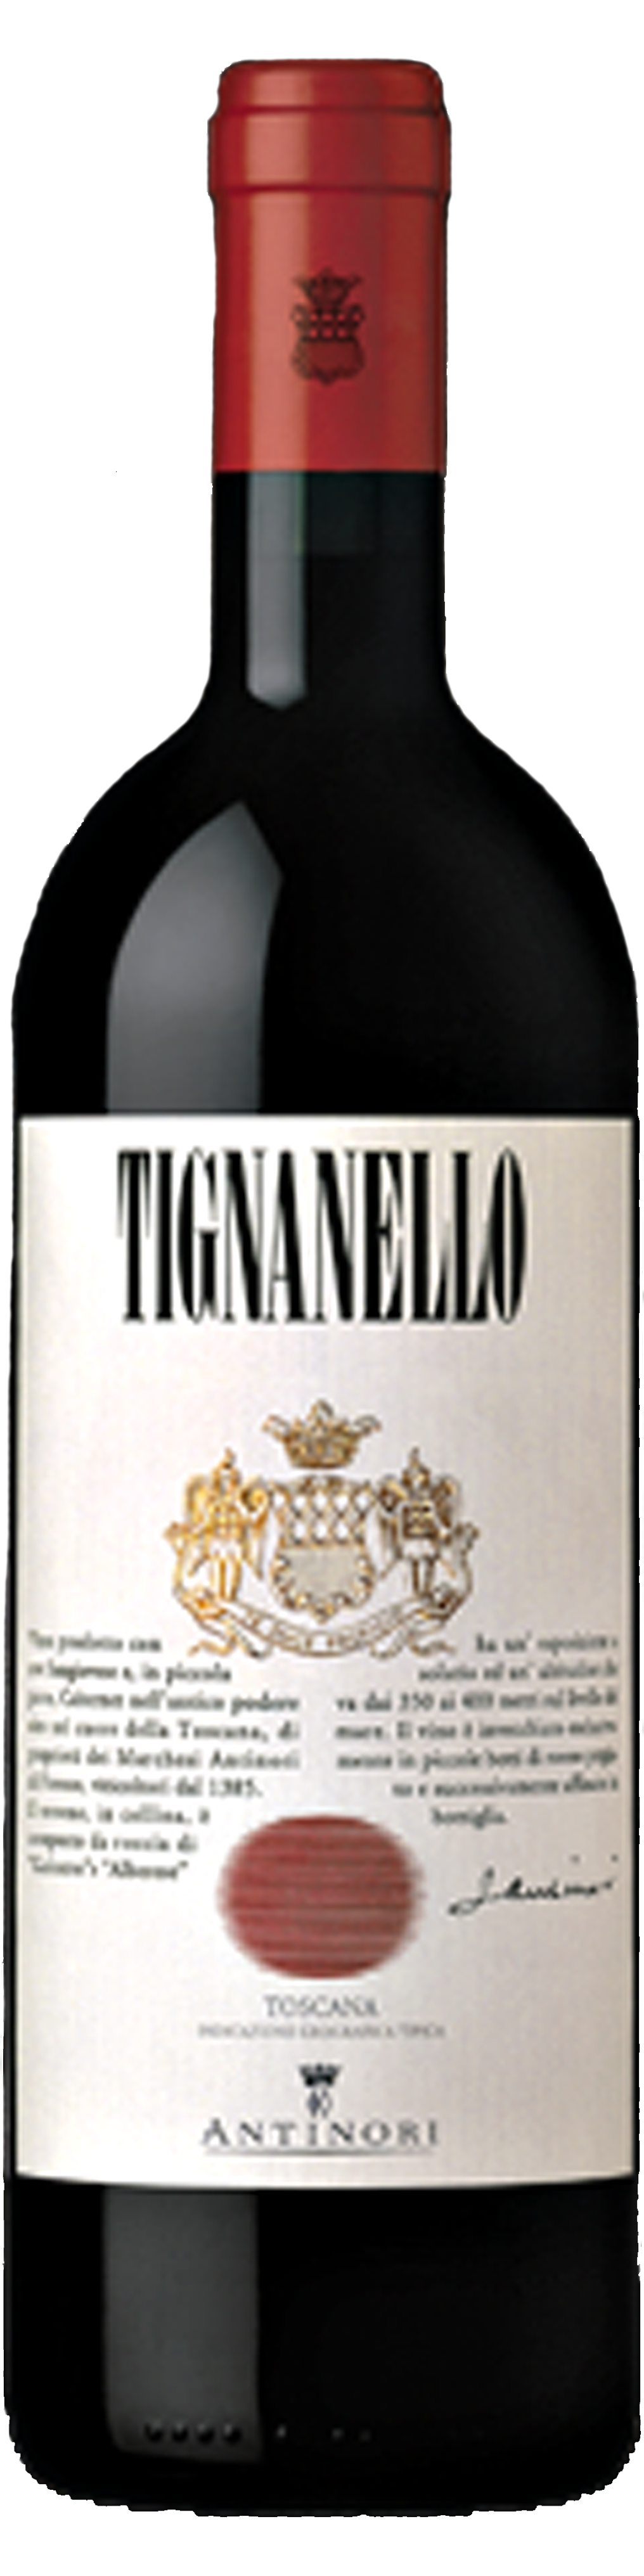 Bottle shot of 2008 Tignanello